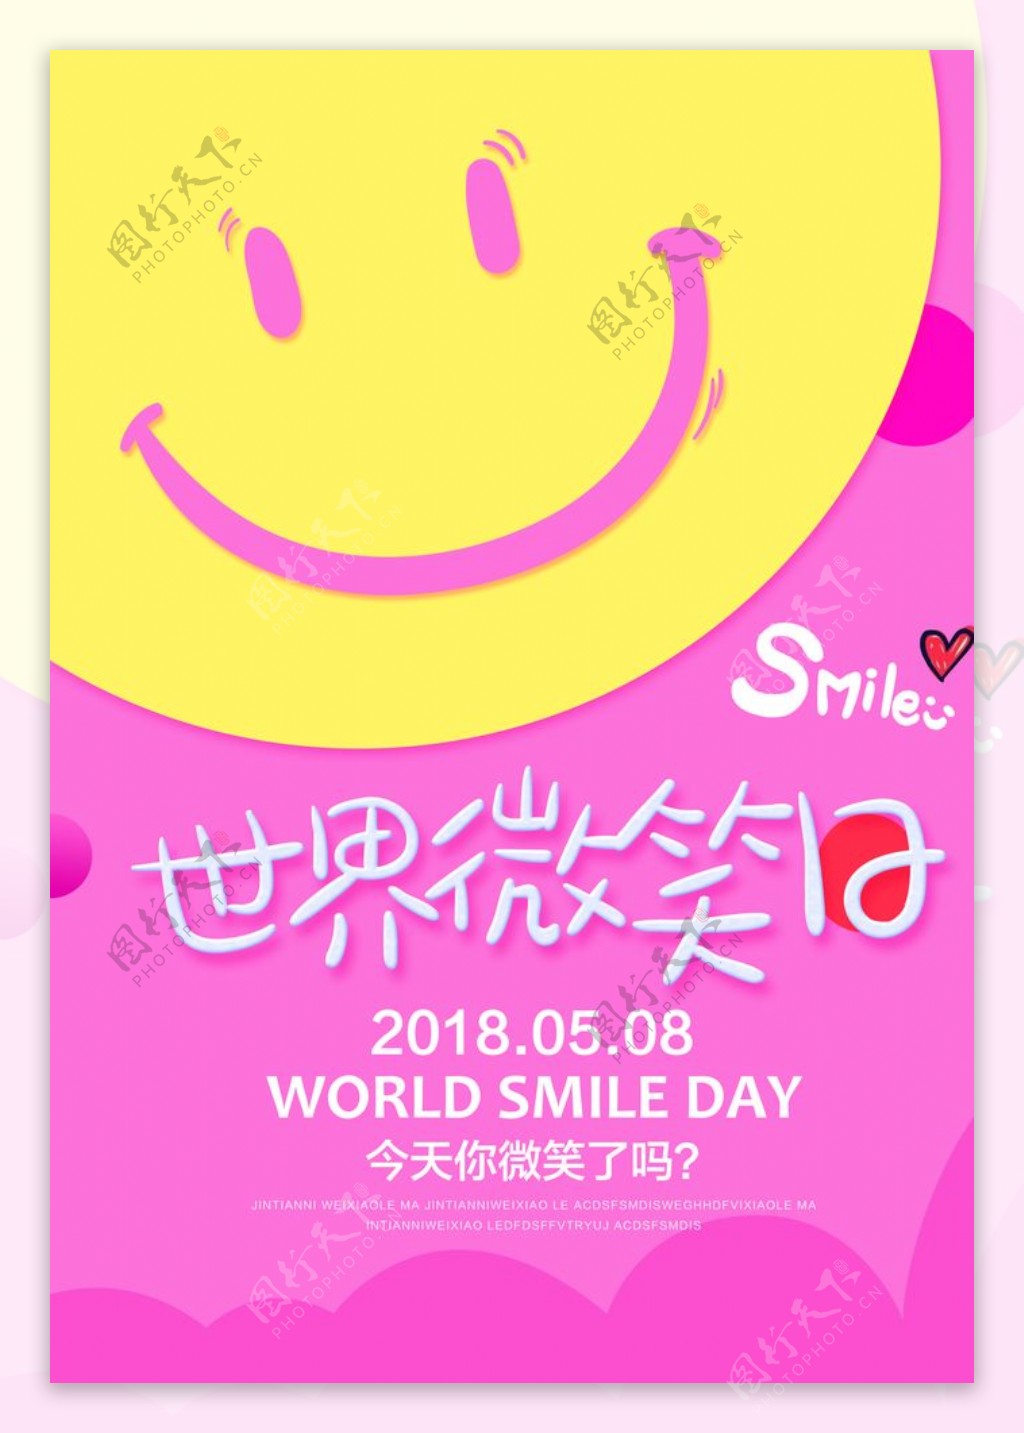 今天你微笑了吗